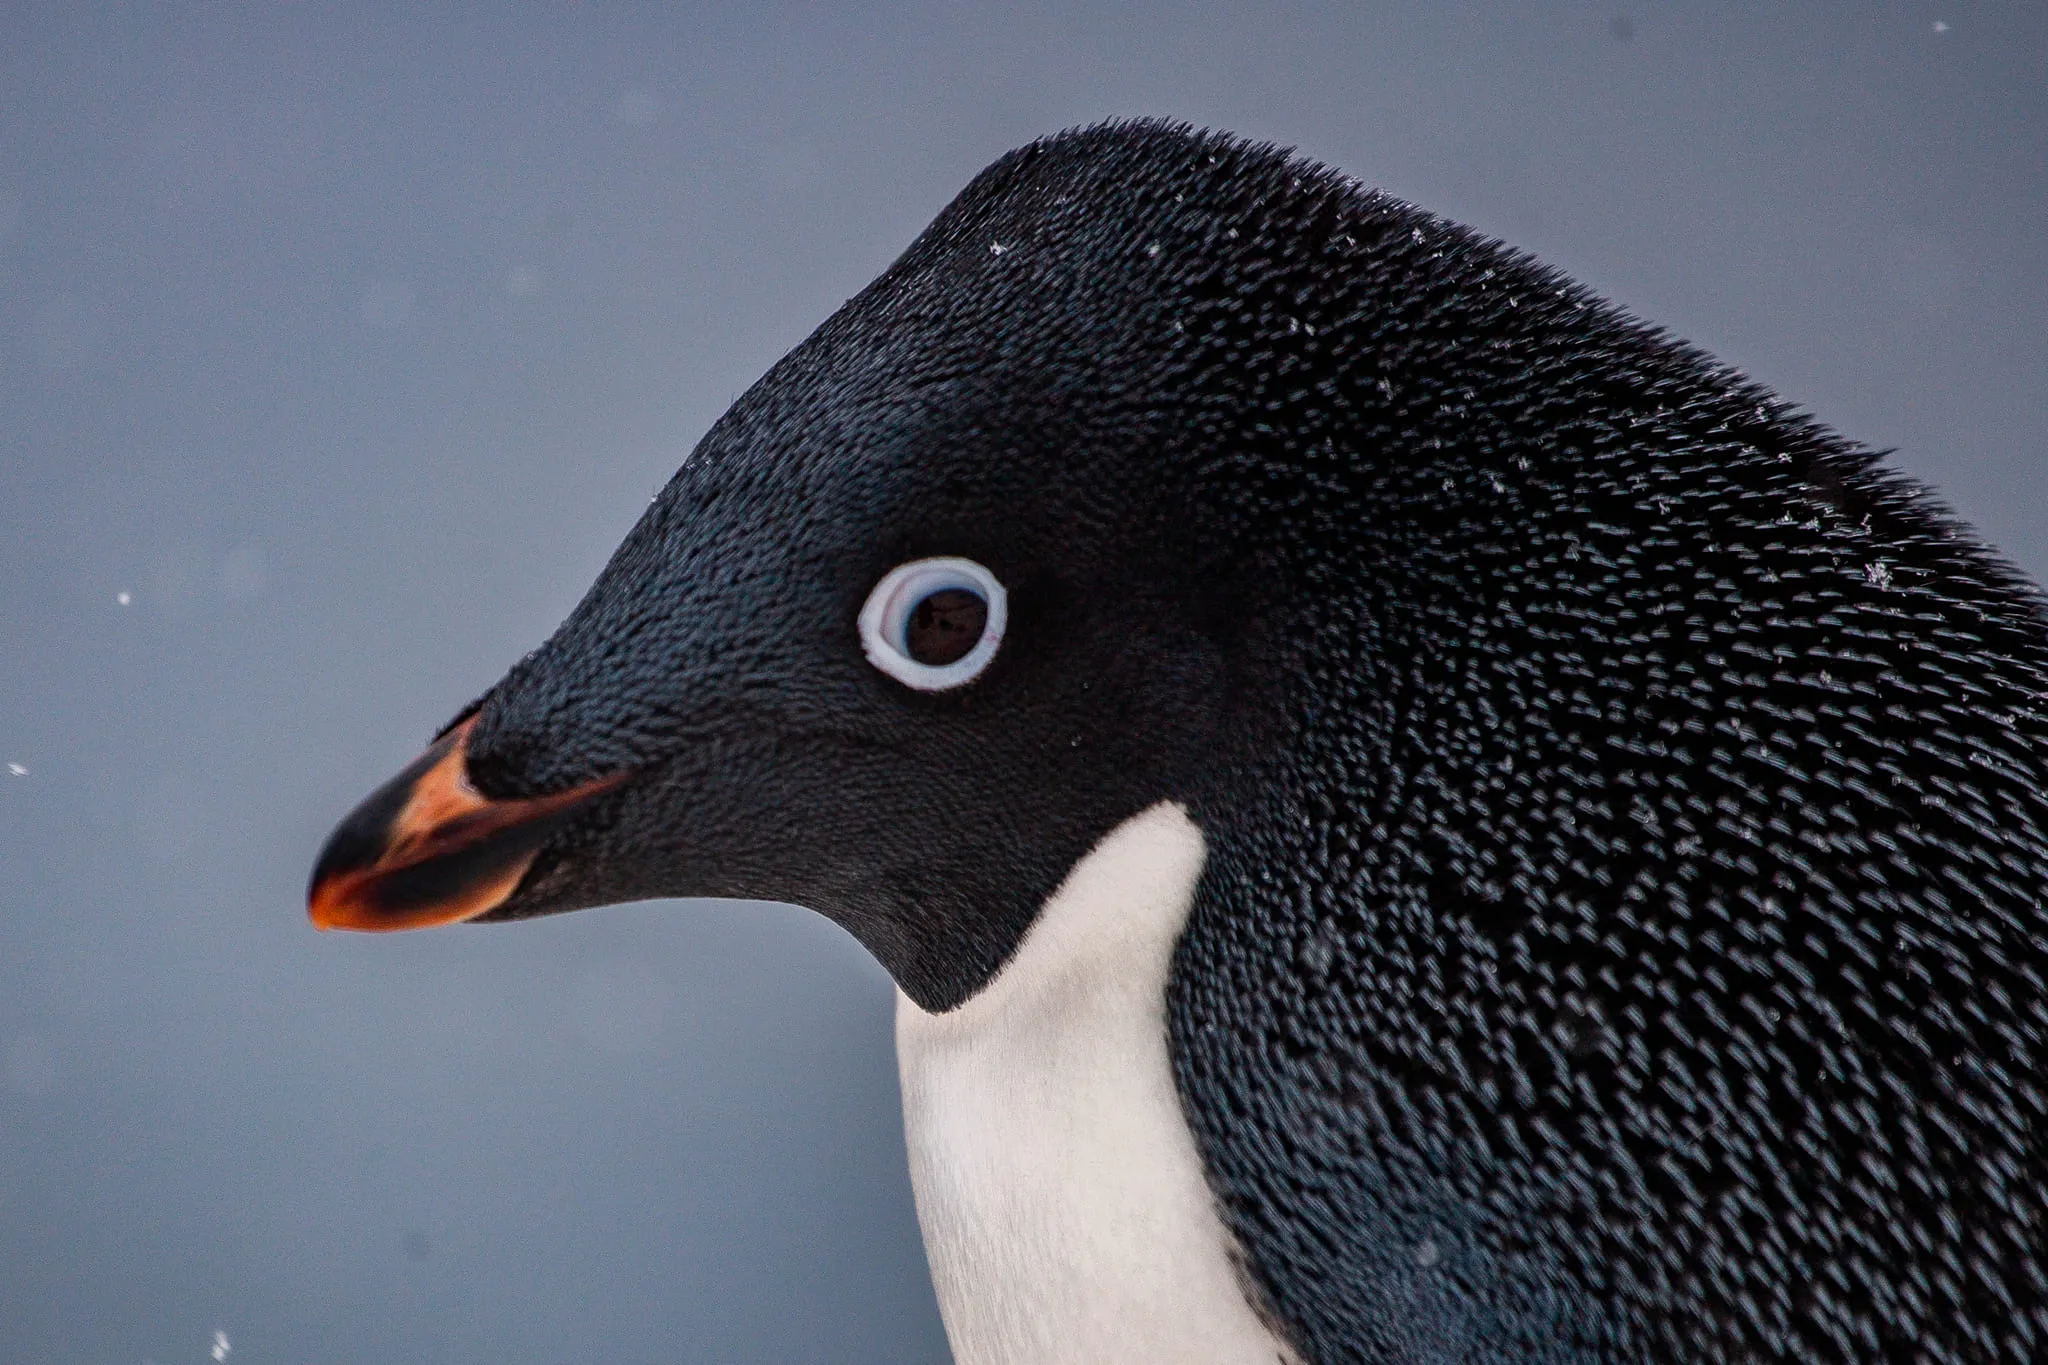 25 апреля - Всемирный день пингвинов